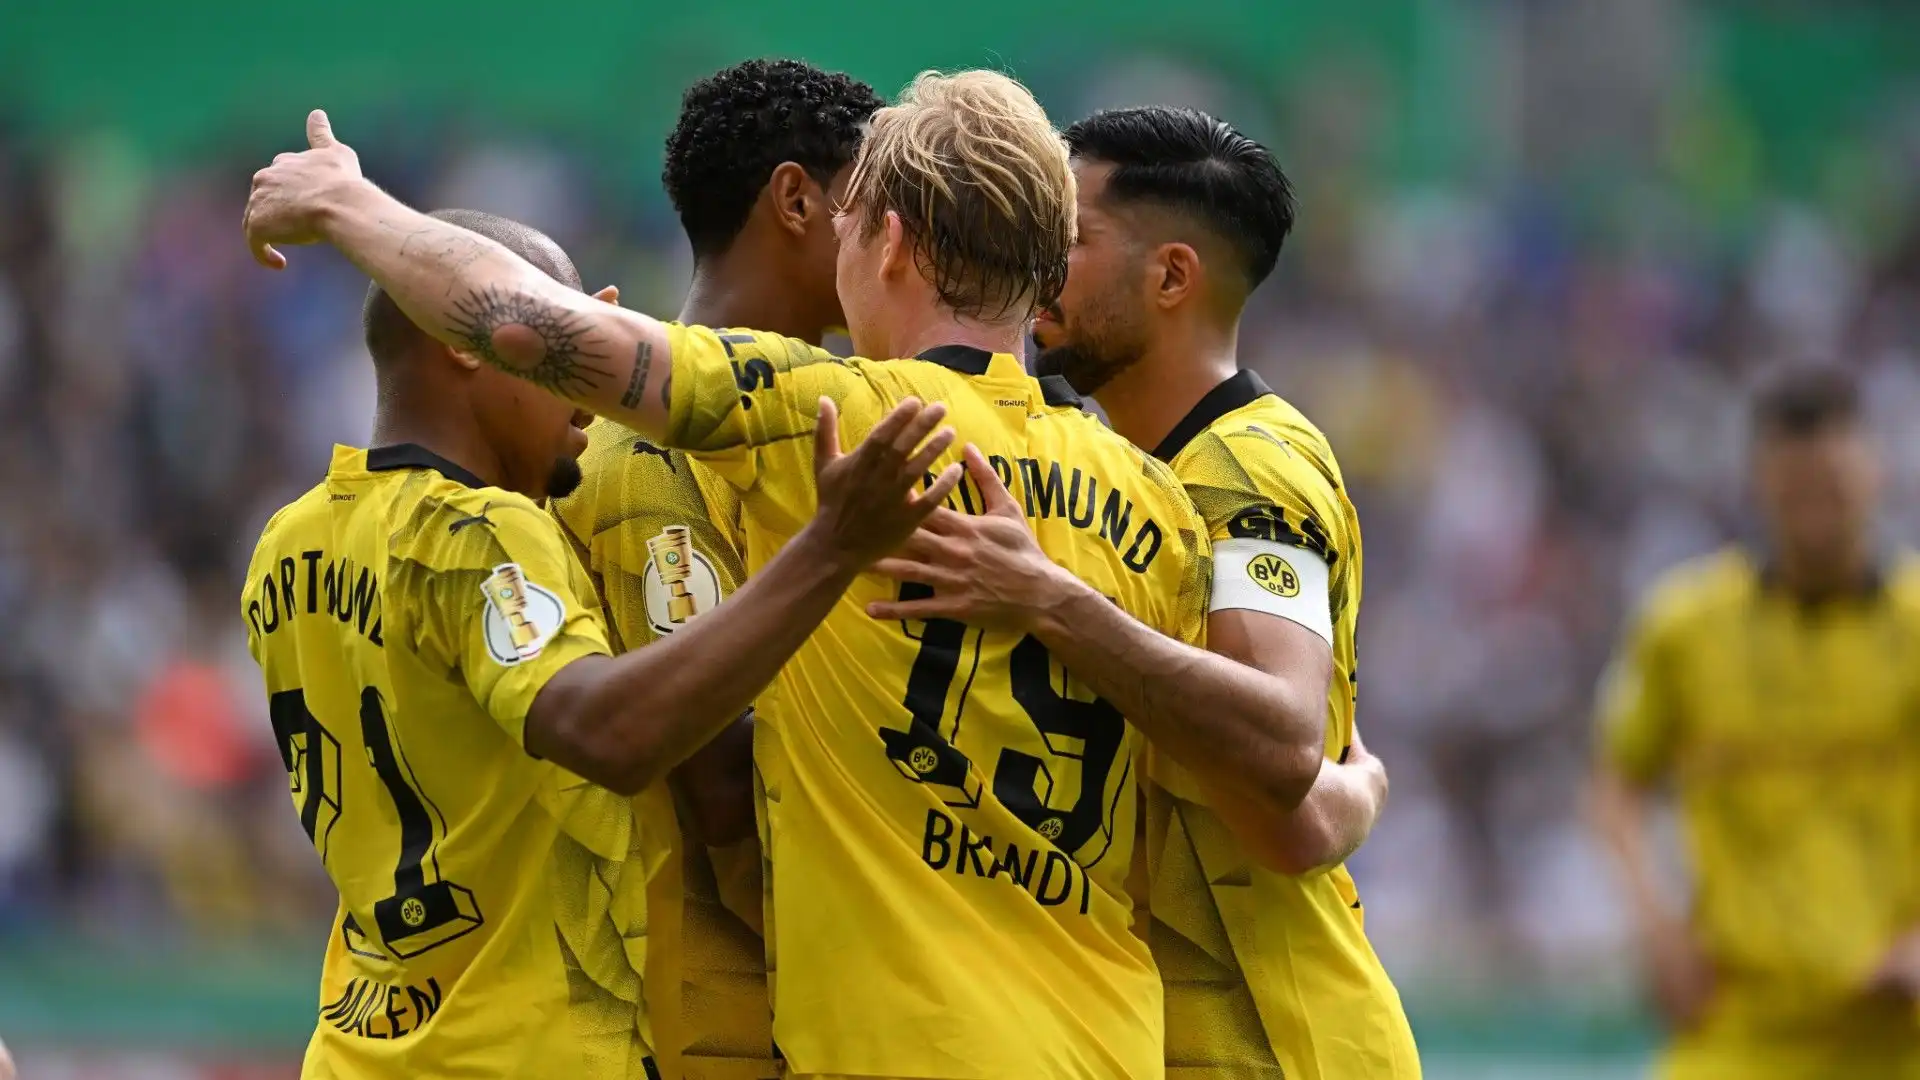 Nuova cessione al Borussia Dortmund: trattative in corso. Foto